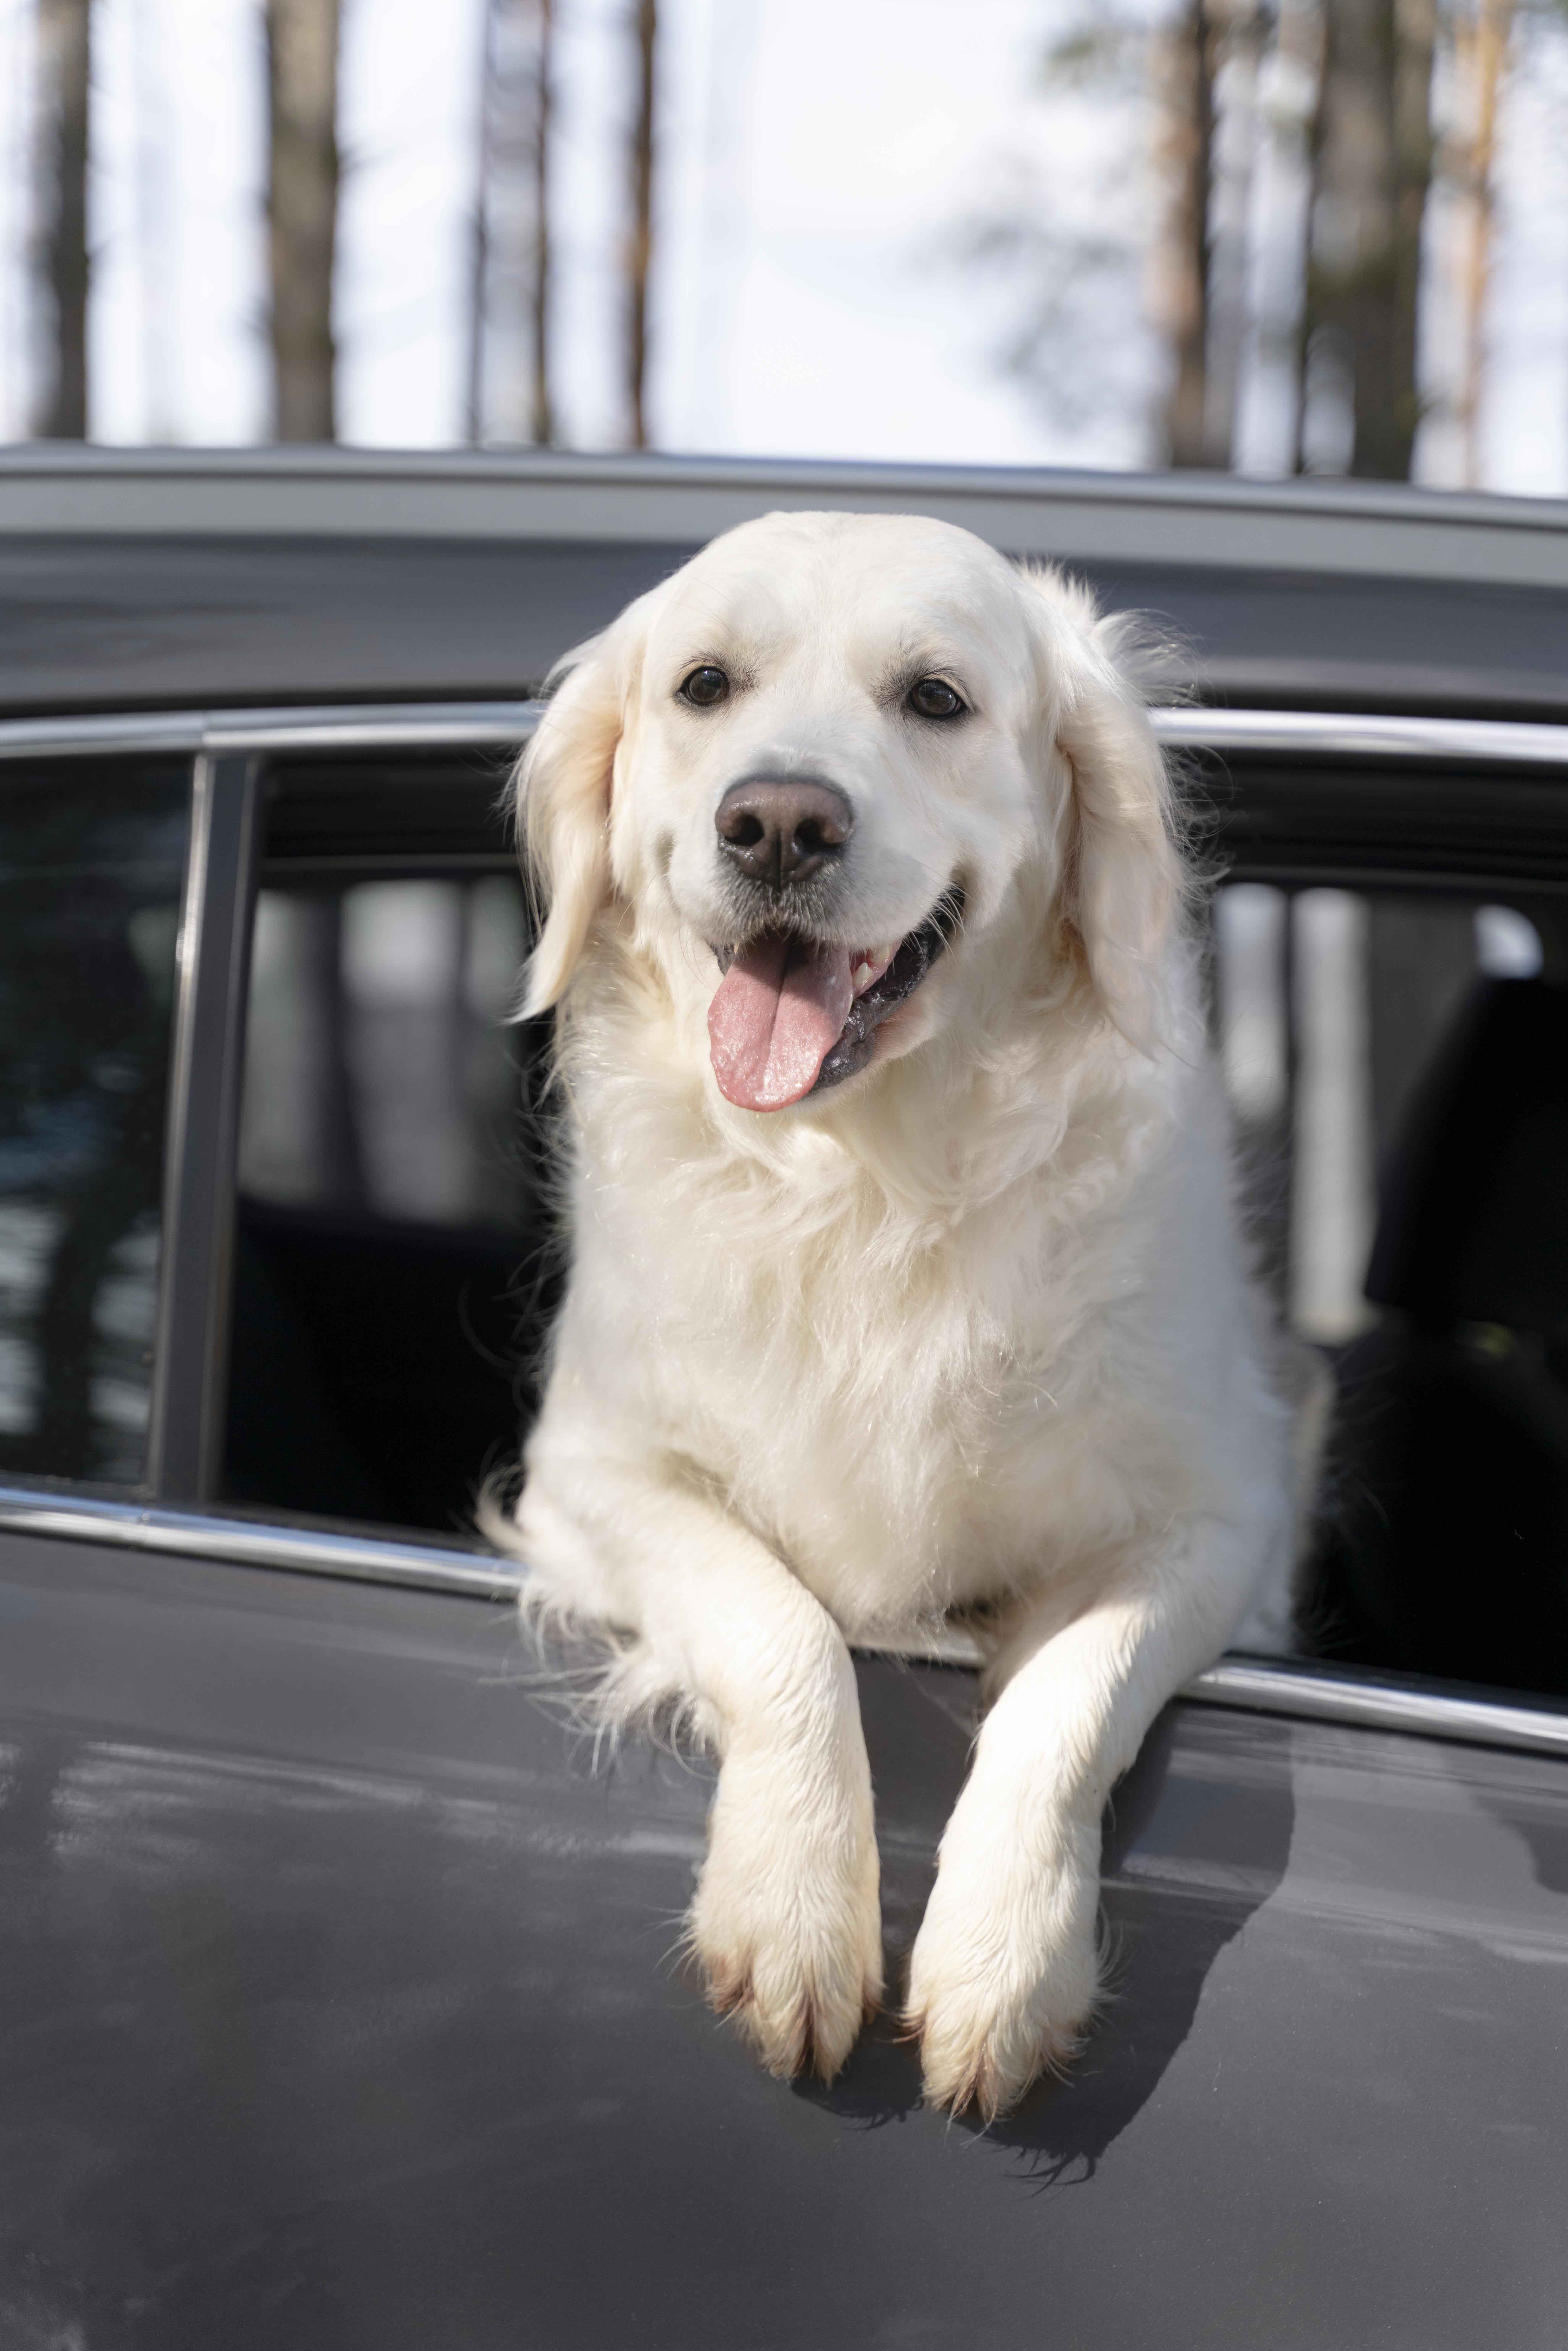 a dog sitting in a car